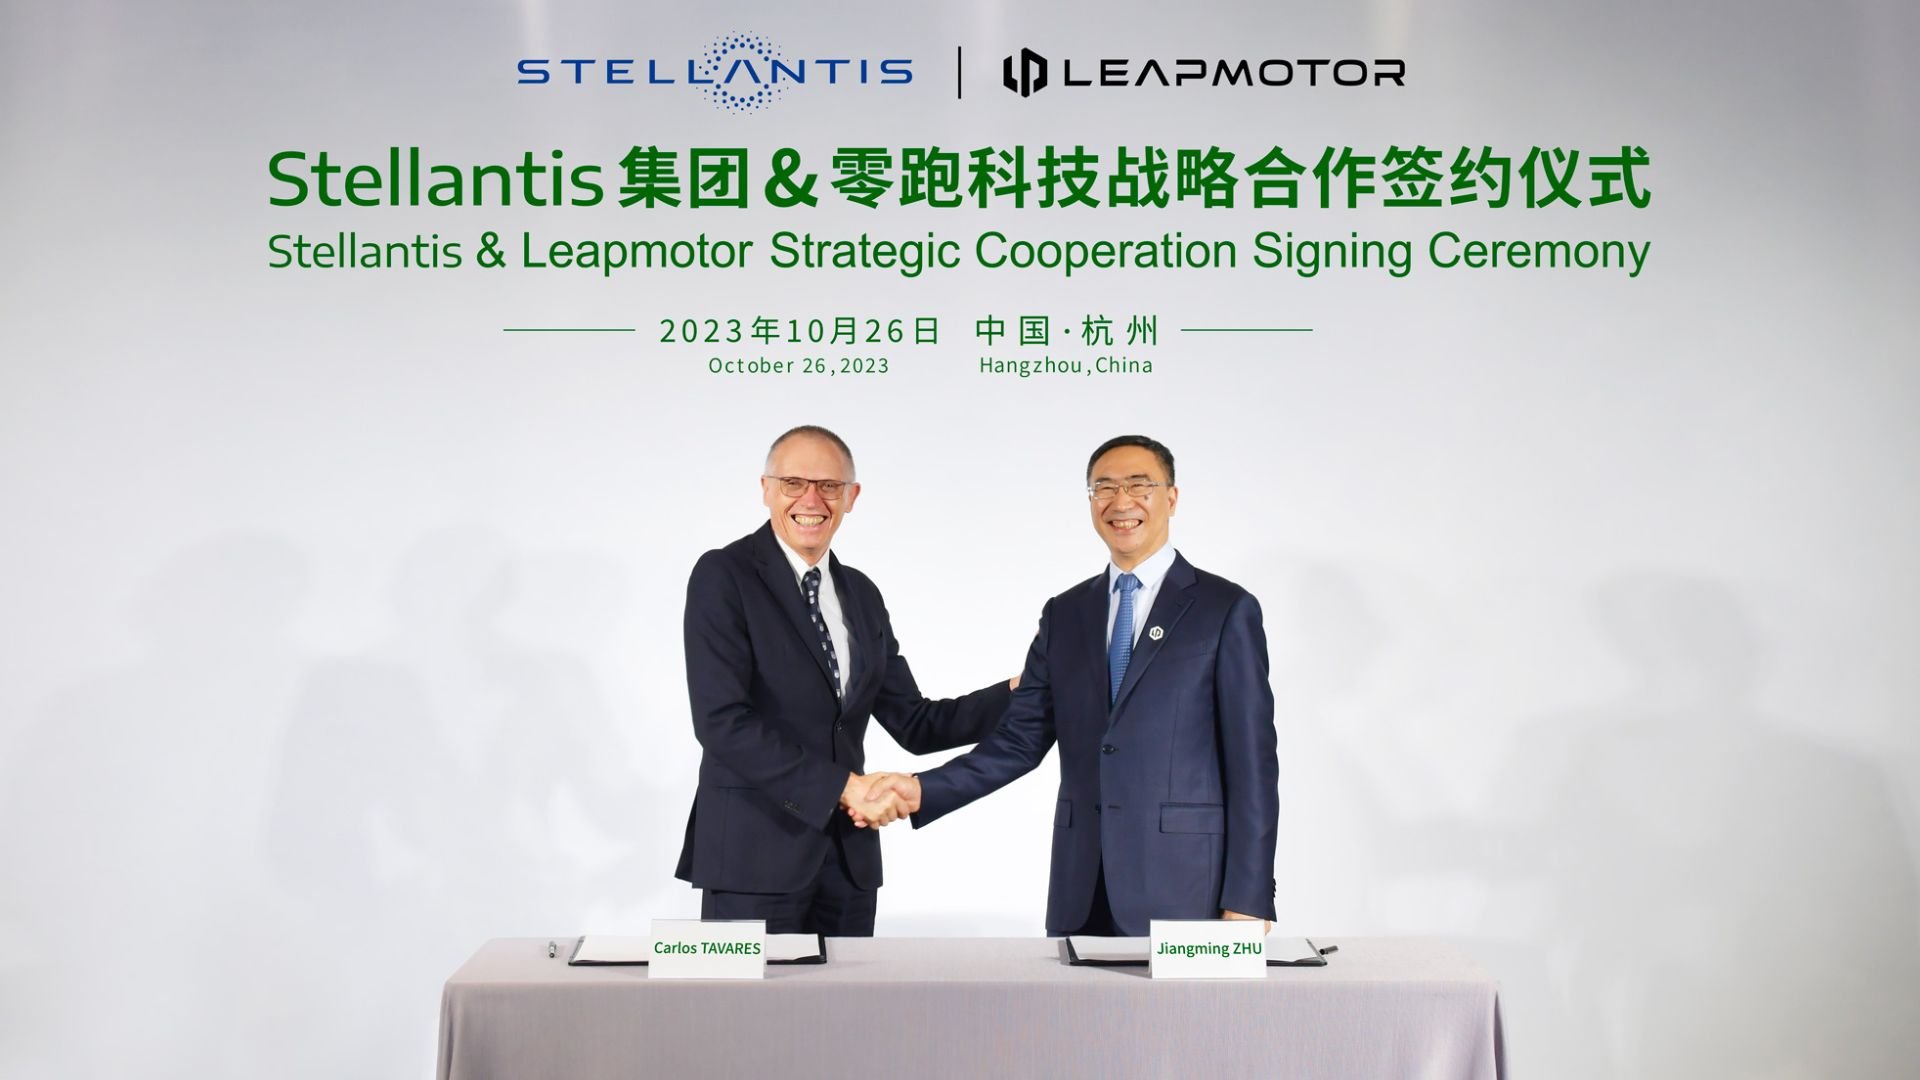 Η Stellantis επενδύει στην Leapmotor